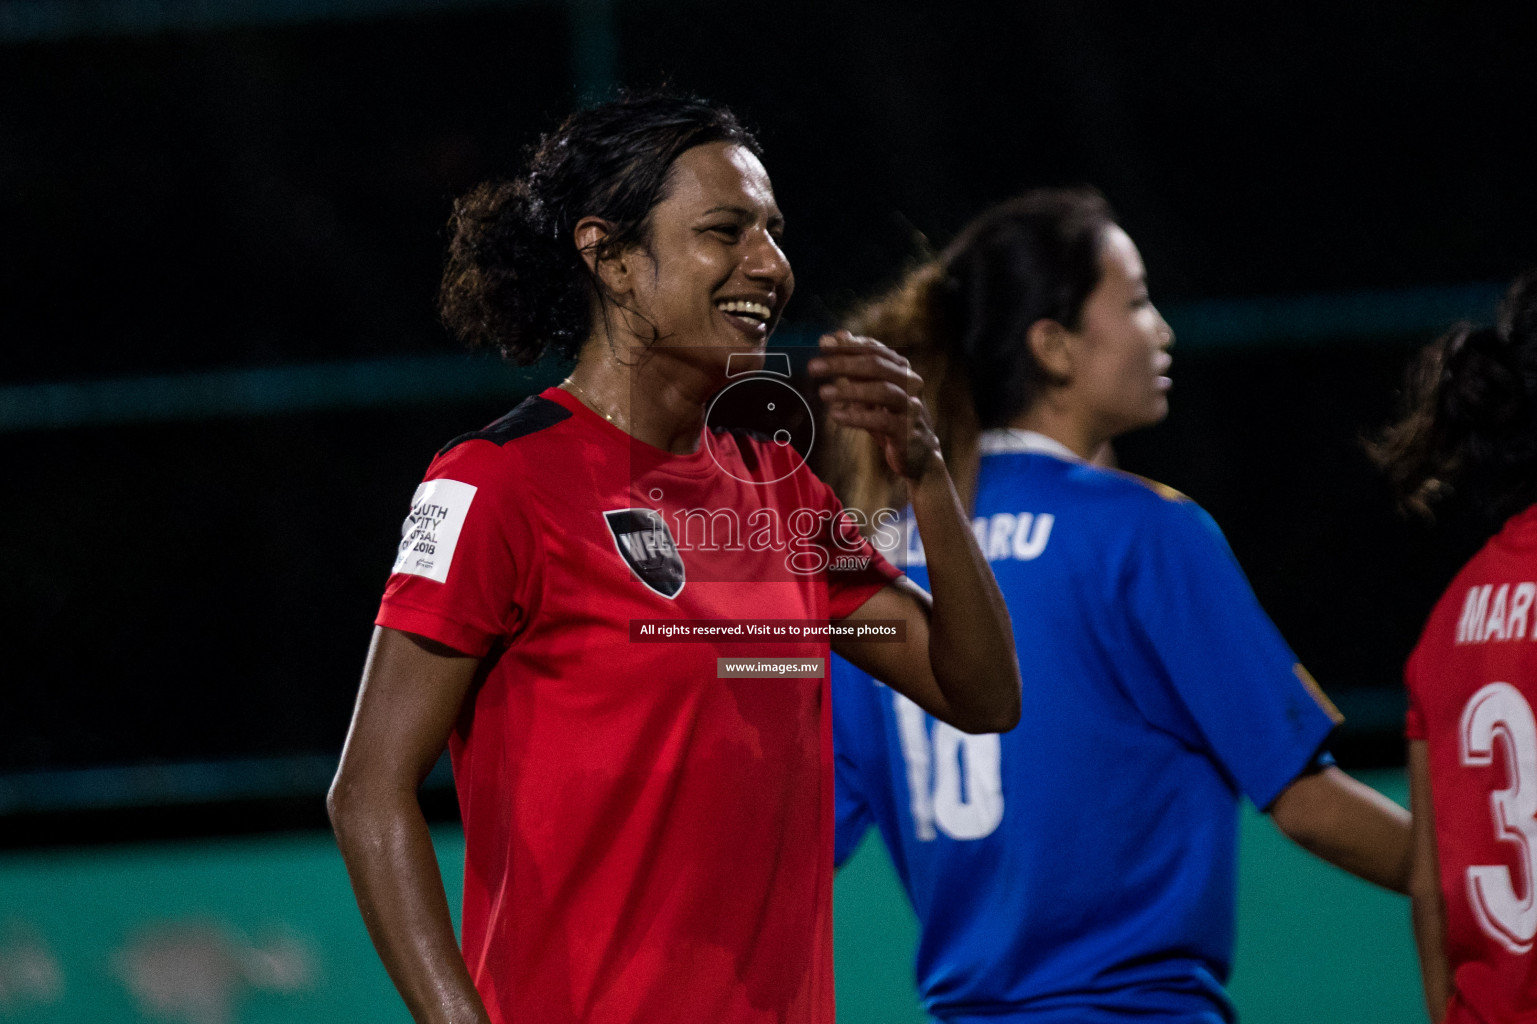 WFC vs Felivaru Friendly Futsal Match 2019 in Felivaru, Maldives on 15th March 2019, Photos: Suadh Abdul Sattar / images.mv